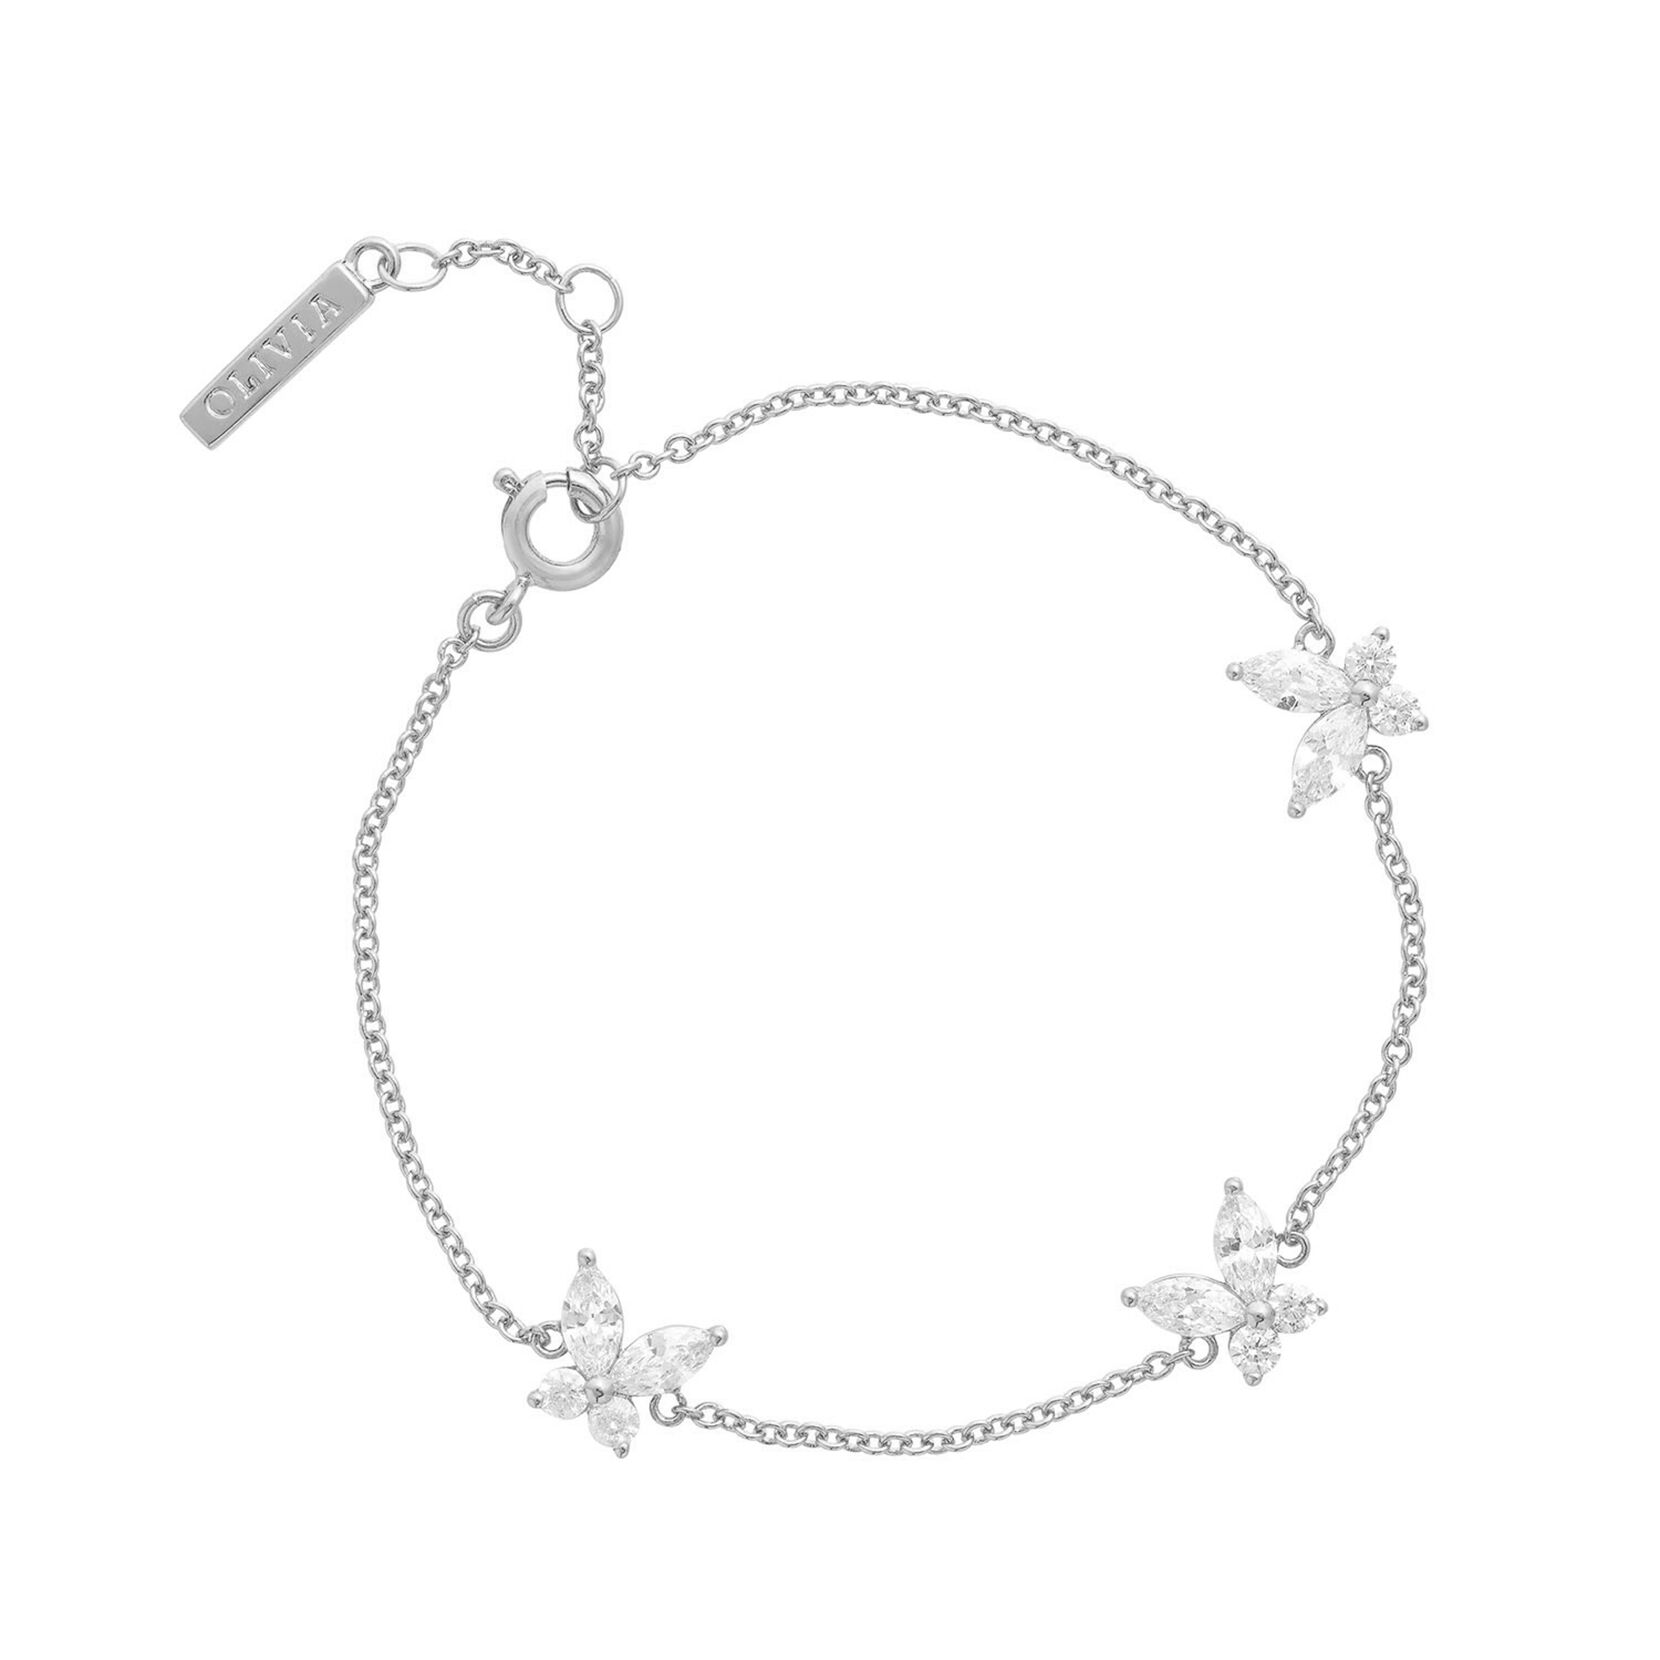 Butterfly silver bracelets